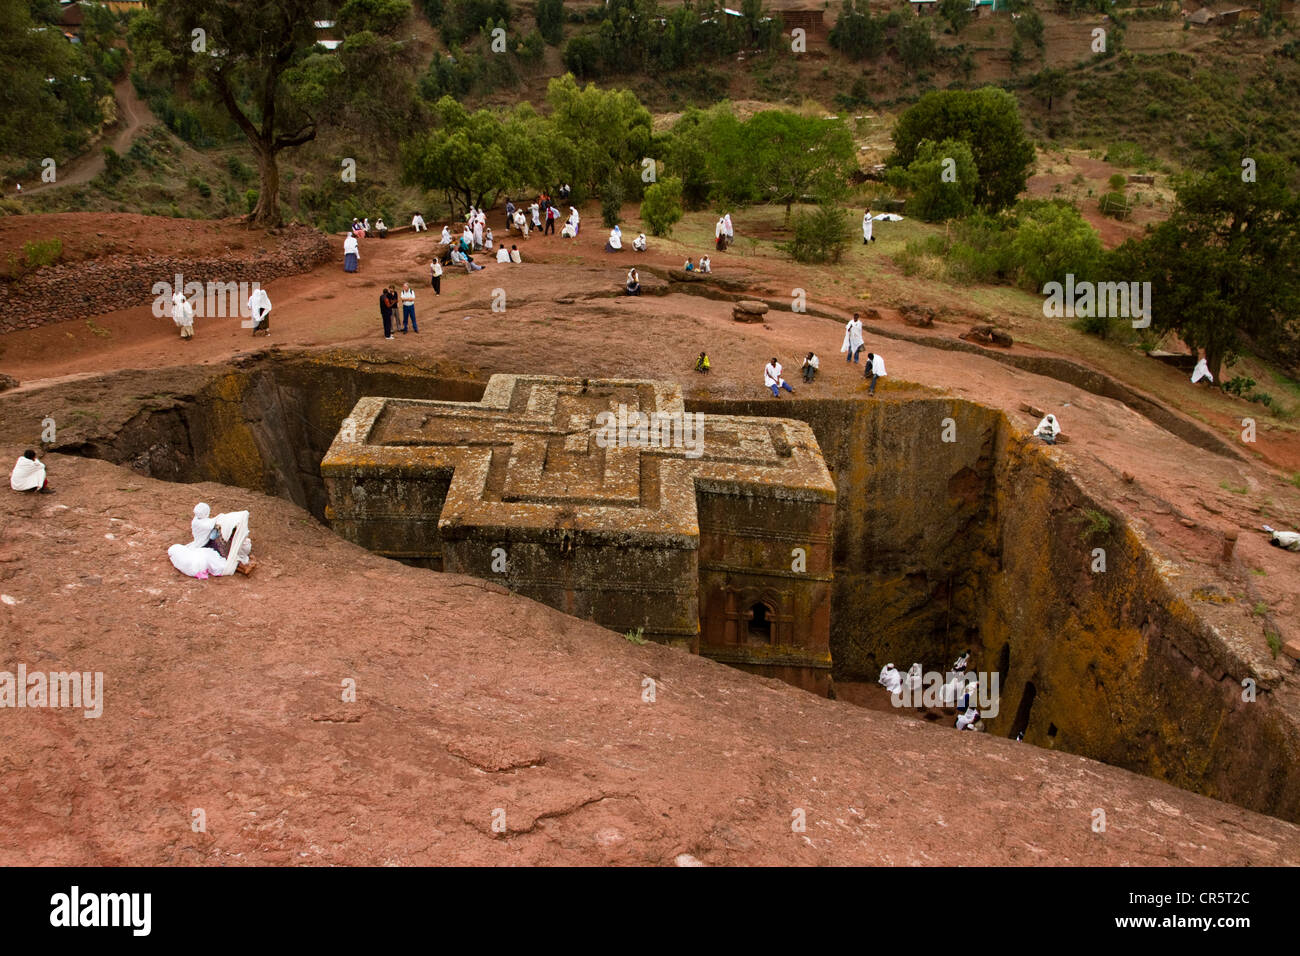 Bet Giyorgis Rock-Hewn Église, Lalibela, Ethiopie, Afrique Banque D'Images